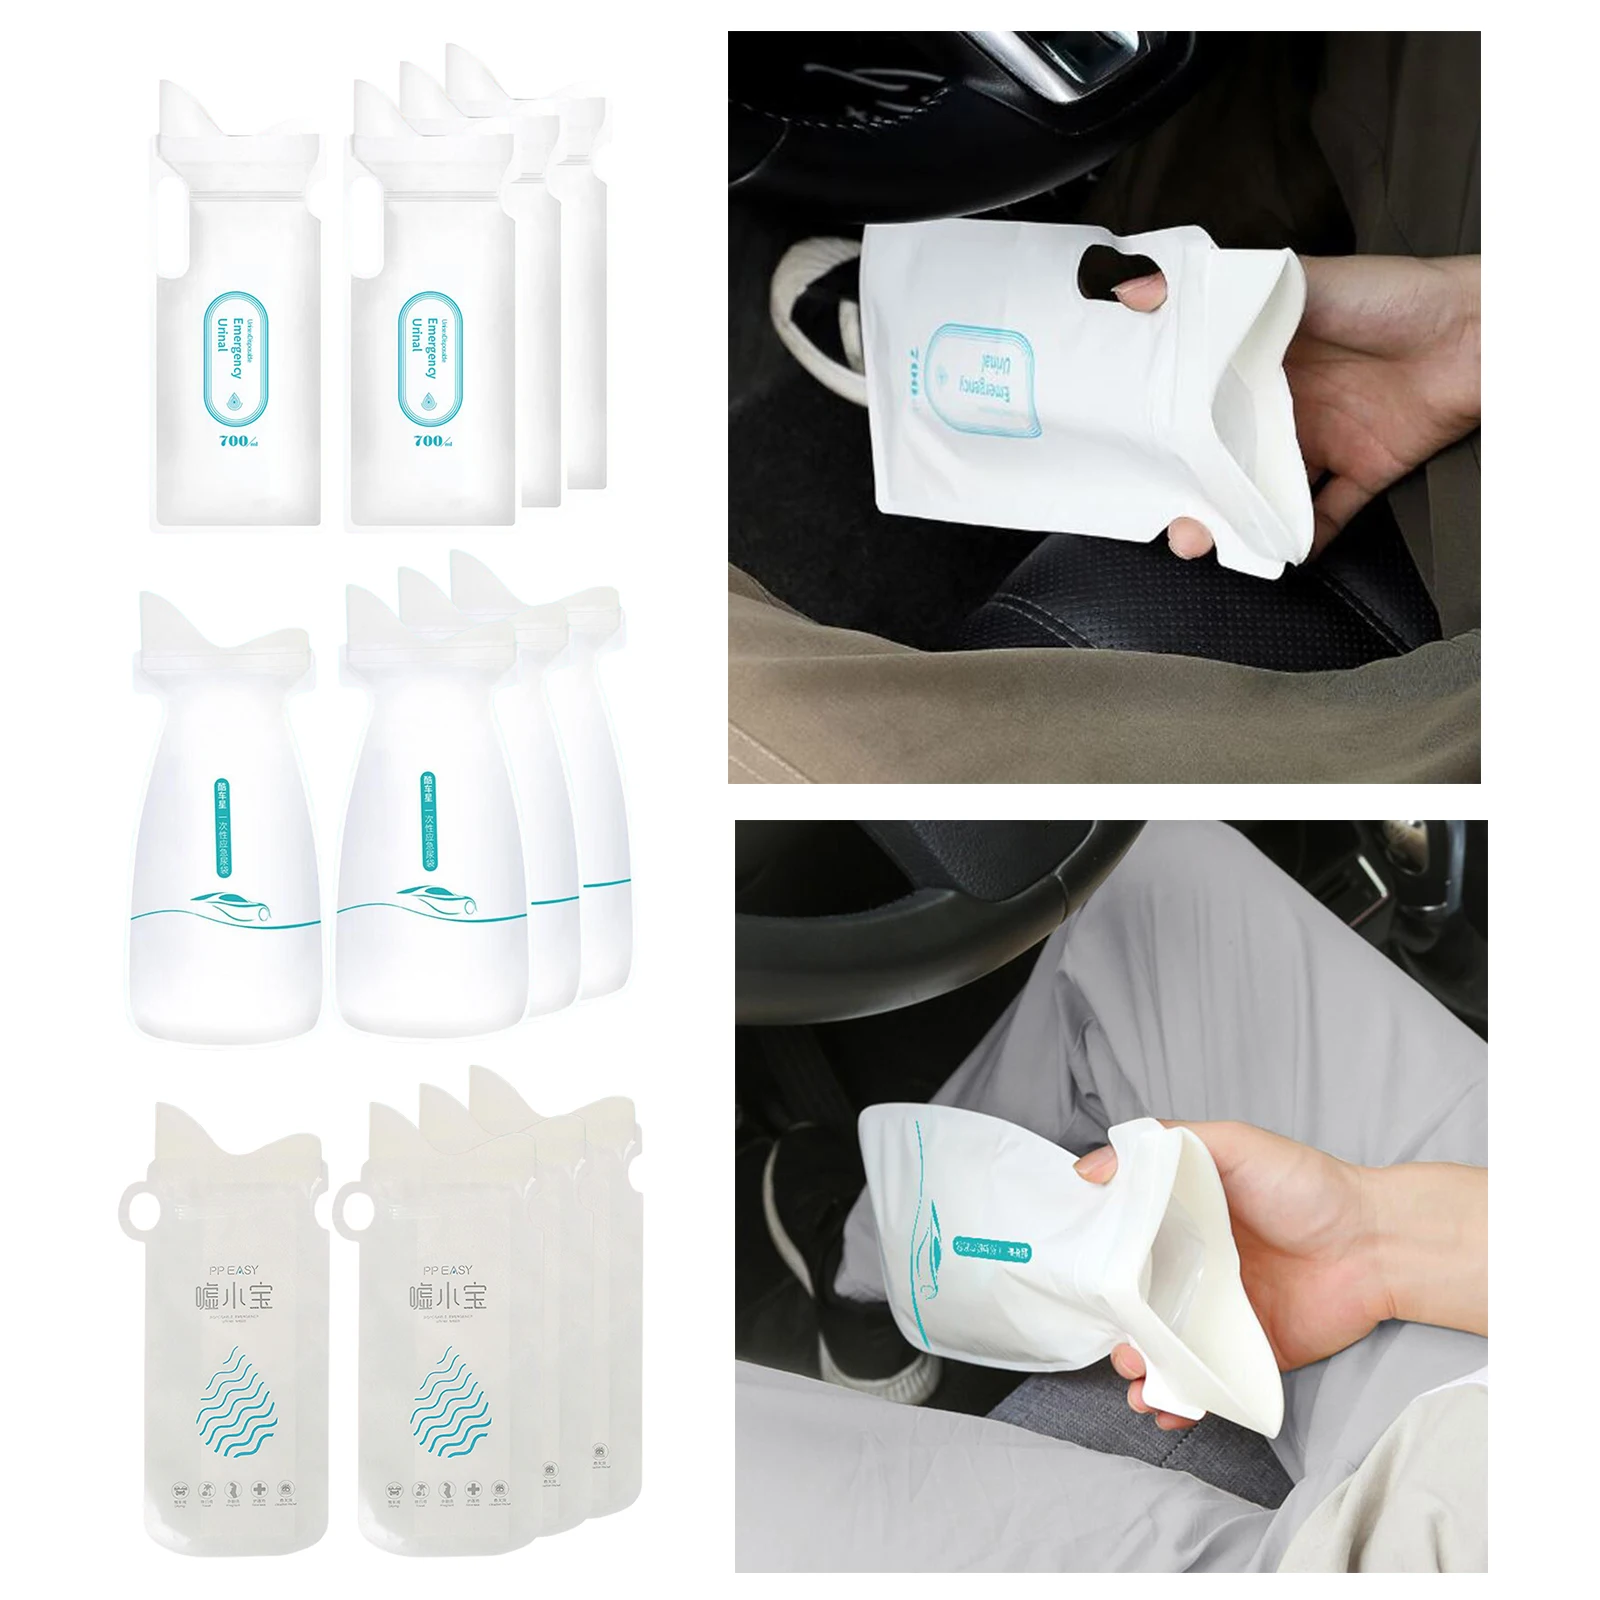 4Pcs 700ml Unisex Disposable Bags Camping Bags L Toilet Emergency Leak Resistant for Adults Children Kids Al